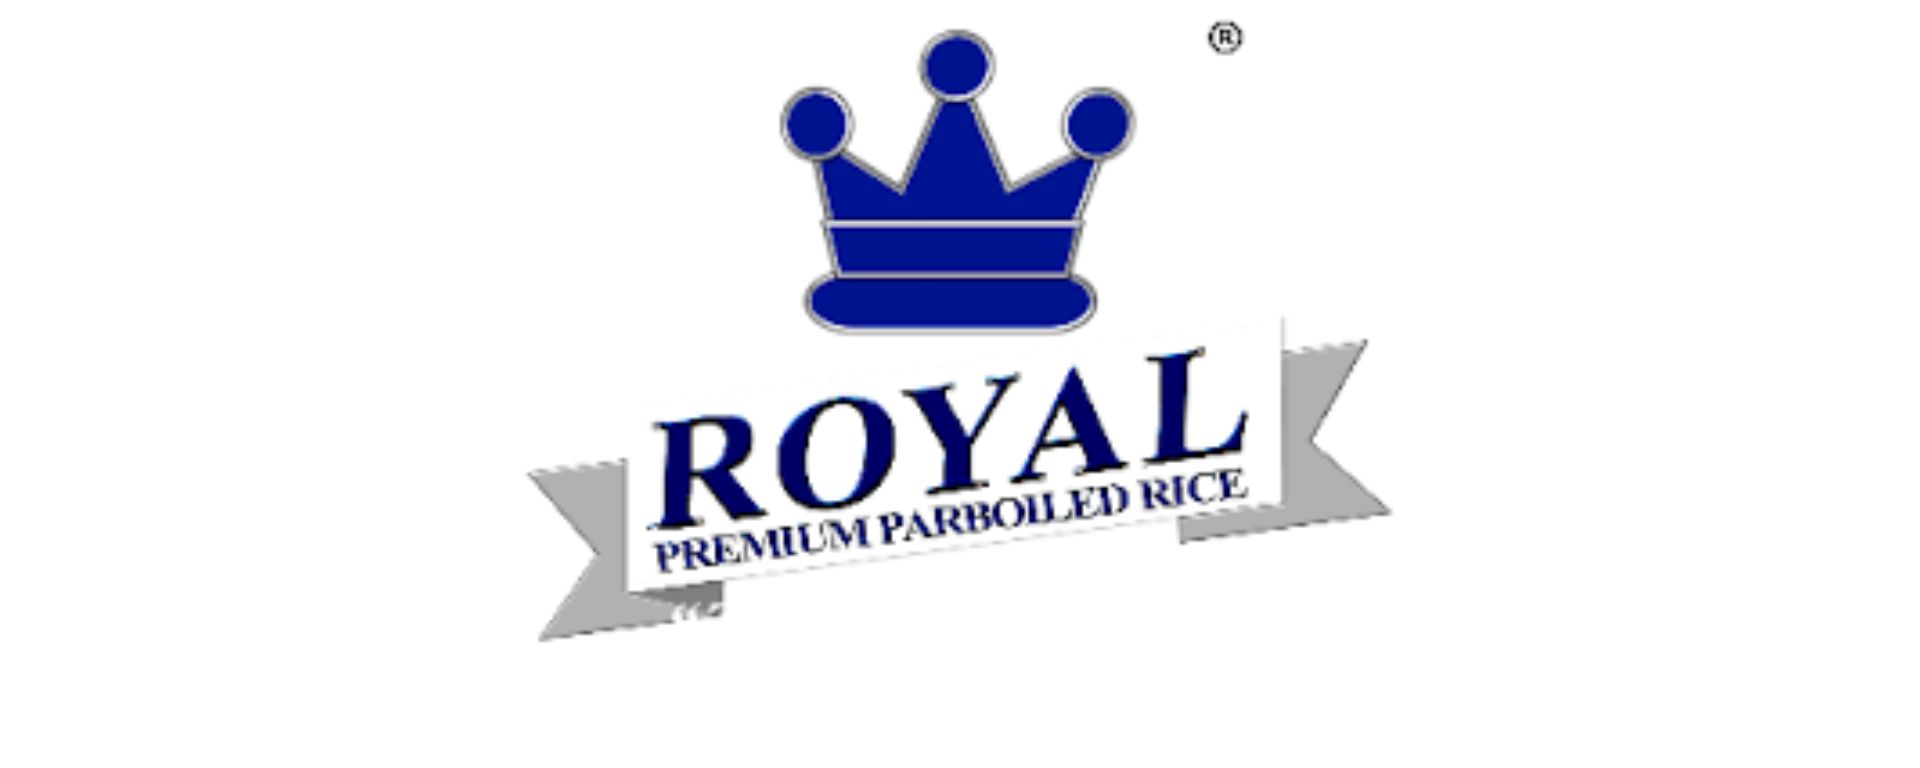 Royal Premium Parboiled Rice